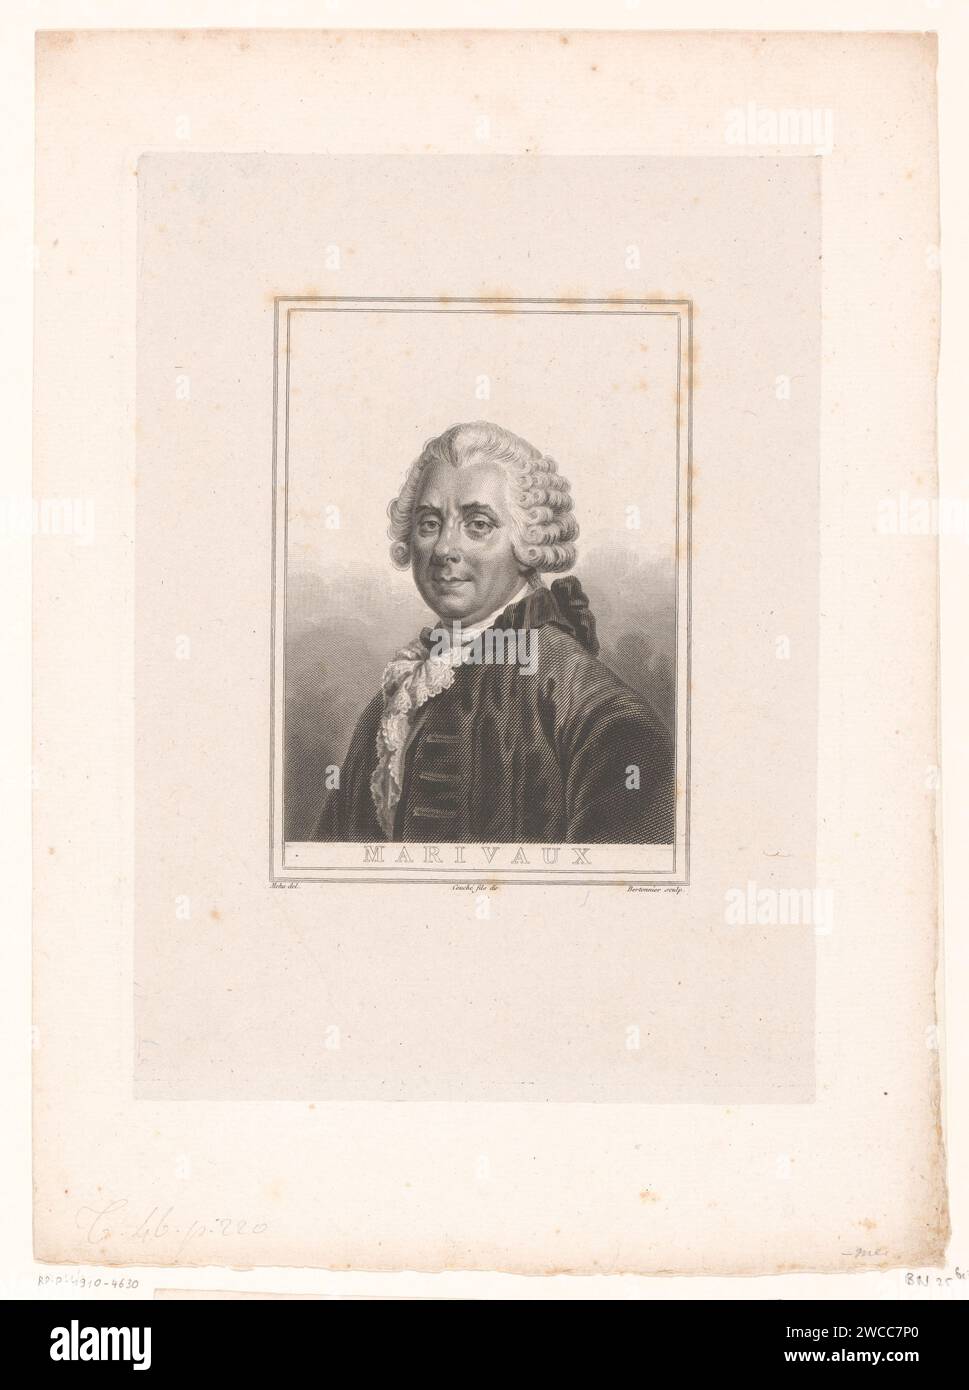 Portret van Pierre Carlet de Marivaux, Pierre François Bertonnier, After Méhu, 1824 print  France paper. engraving historical persons Stock Photo